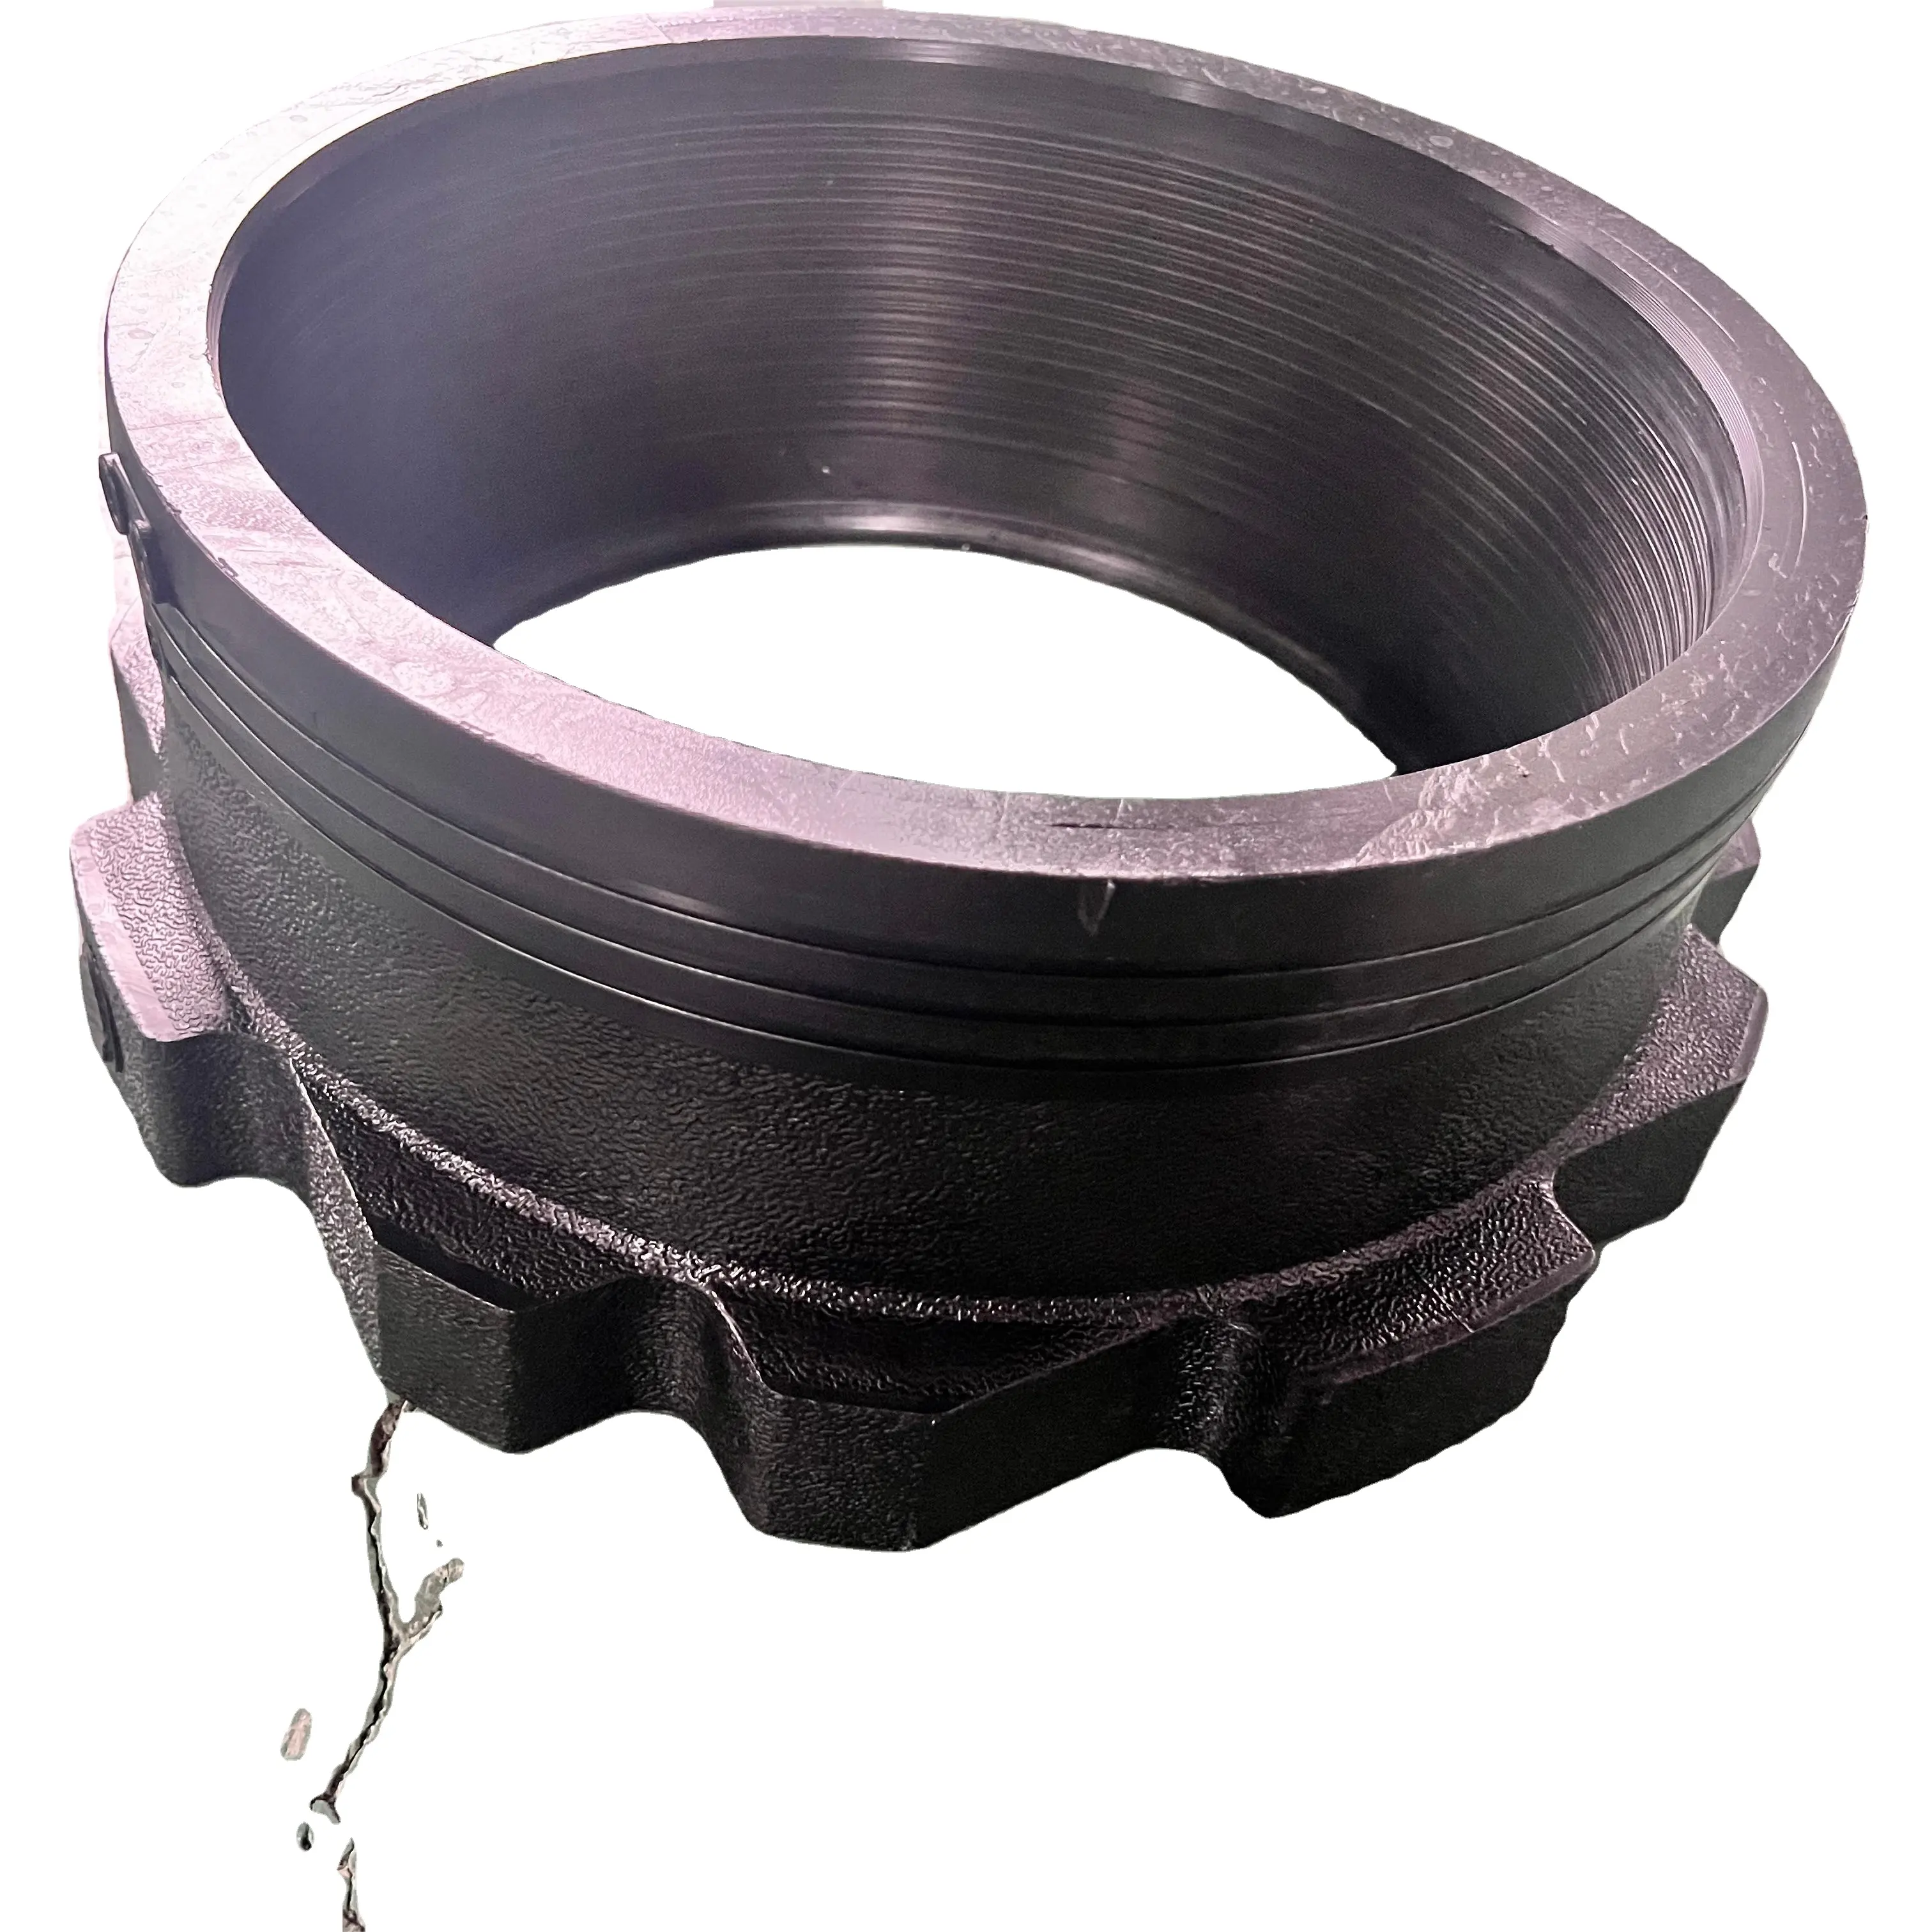 Jy electrofusion 315 mét phụ kiện đường ống với vòng mặt bích Adapter hàn kết nối OEM & ODM hỗ trợ ép phun kỹ thuật